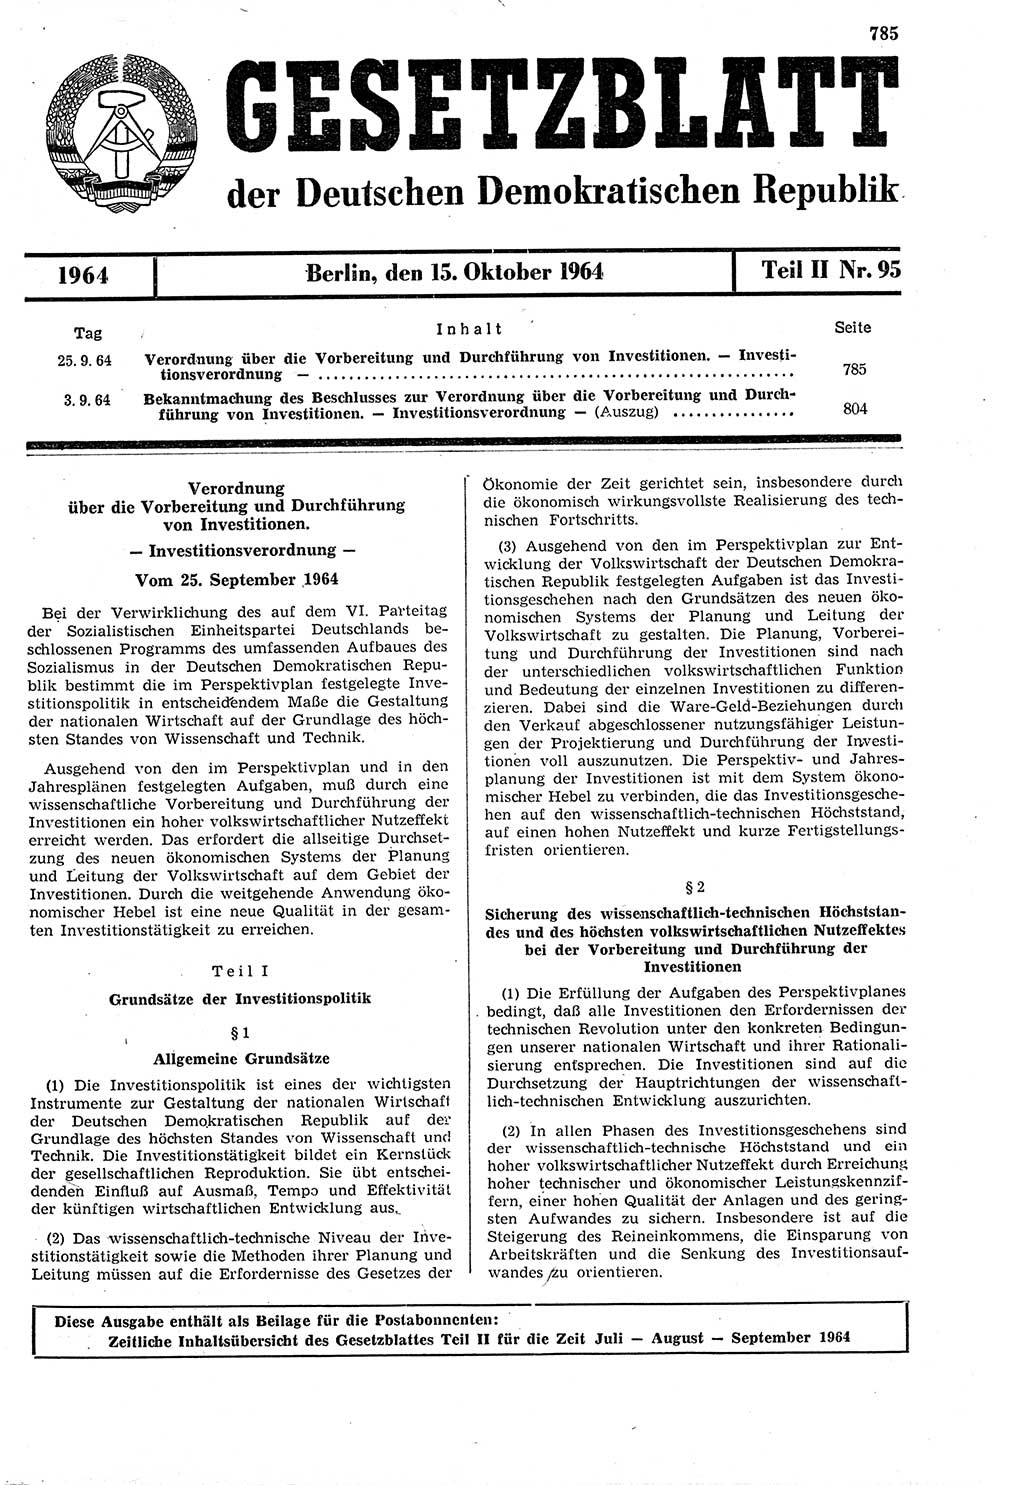 Gesetzblatt (GBl.) der Deutschen Demokratischen Republik (DDR) Teil ⅠⅠ 1964, Seite 785 (GBl. DDR ⅠⅠ 1964, S. 785)